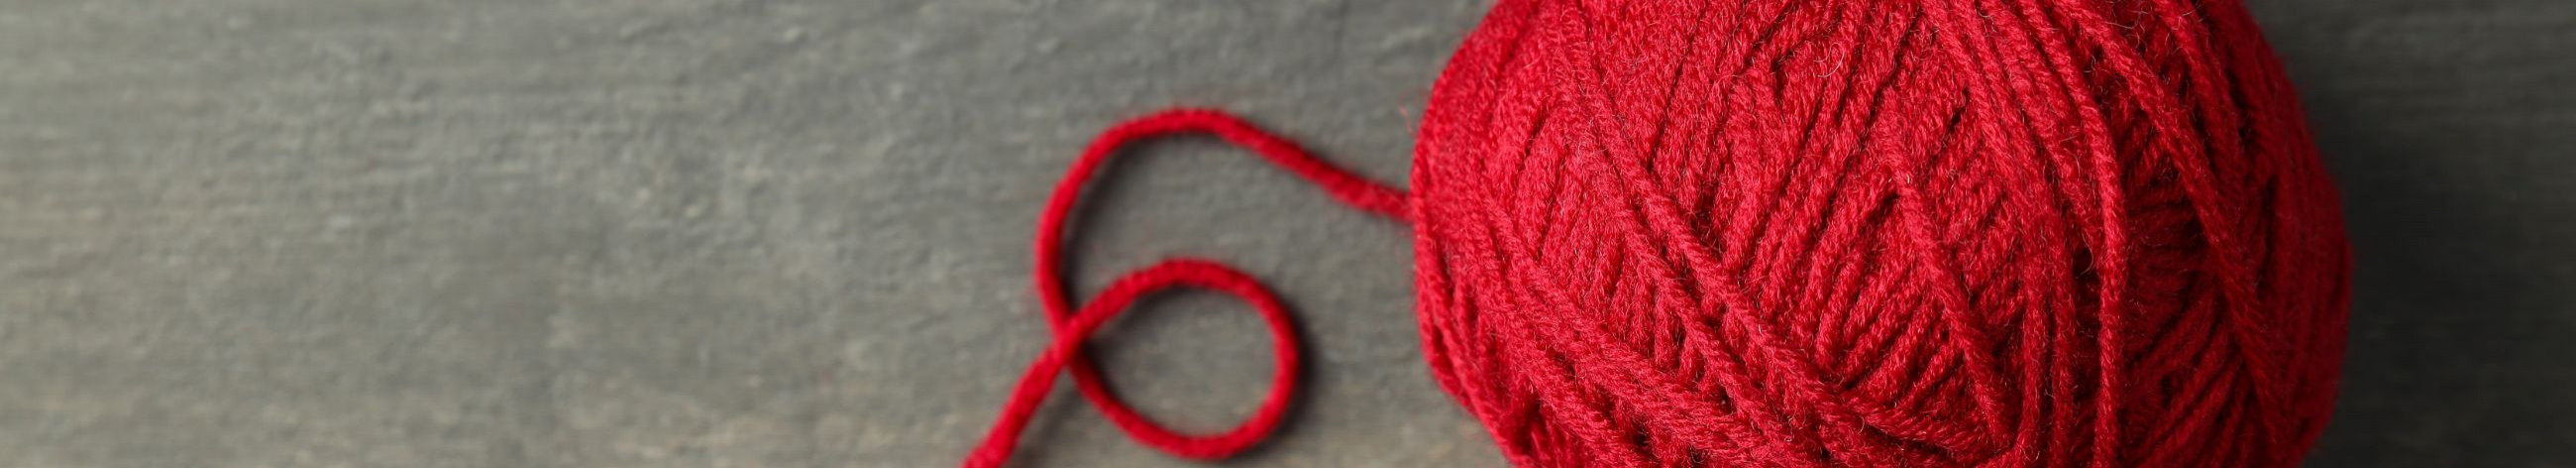 estonian yarns, alpaca yarns, merino yarn, bamboo yarns, wool yarns, buttons and bag handles, crochet needles, rods and crochet needles, shawl needles, dollwear